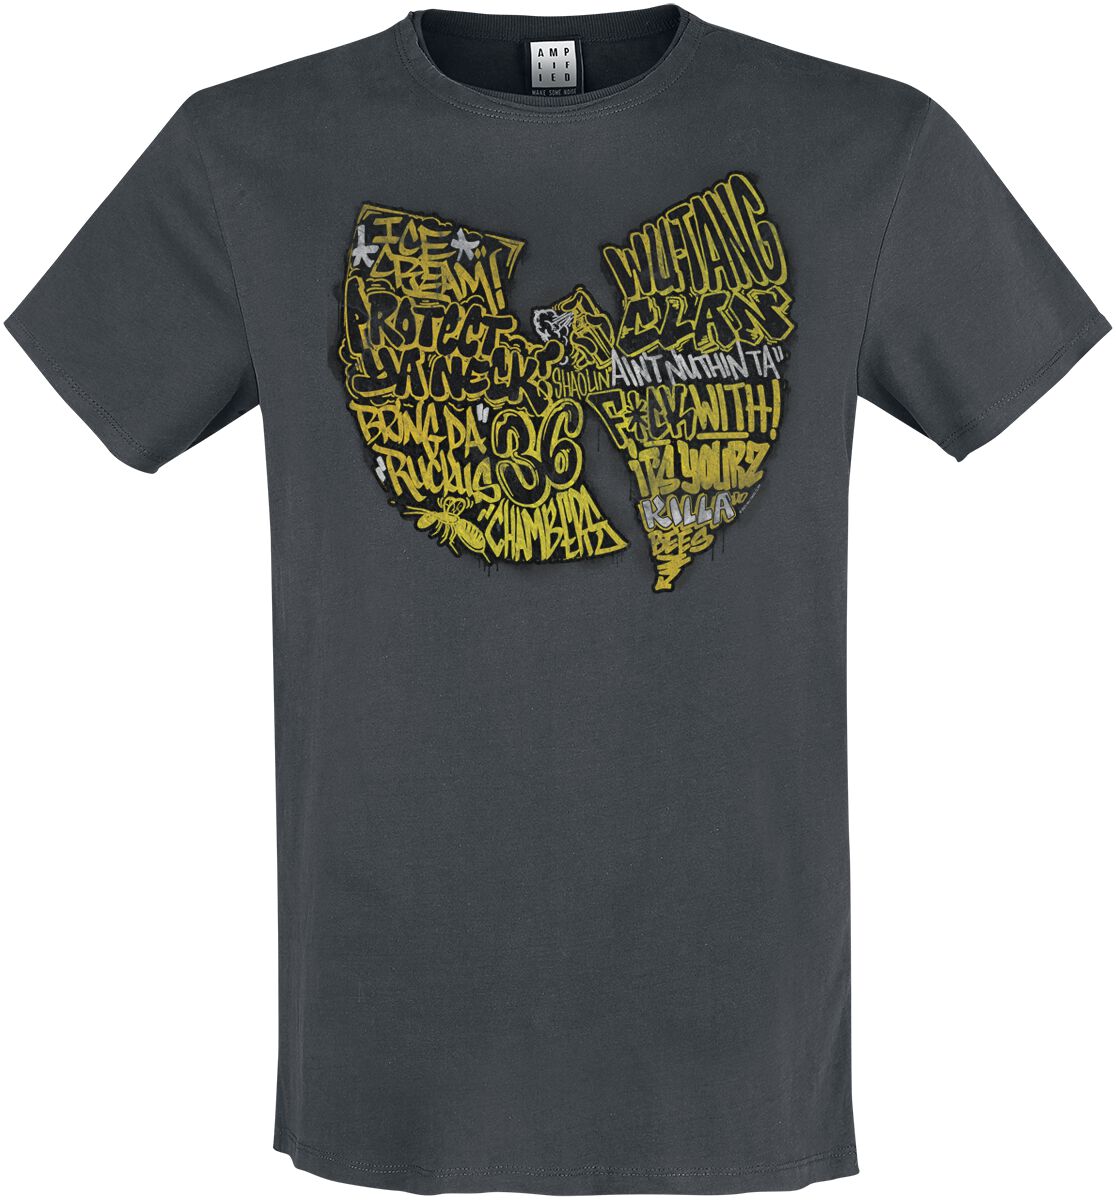 Wu-Tang Clan T-Shirt - Amplified Collection - Graffiti Logo - S bis 3XL - für Männer - Größe L - charcoal  - Lizenziertes Merchandise!